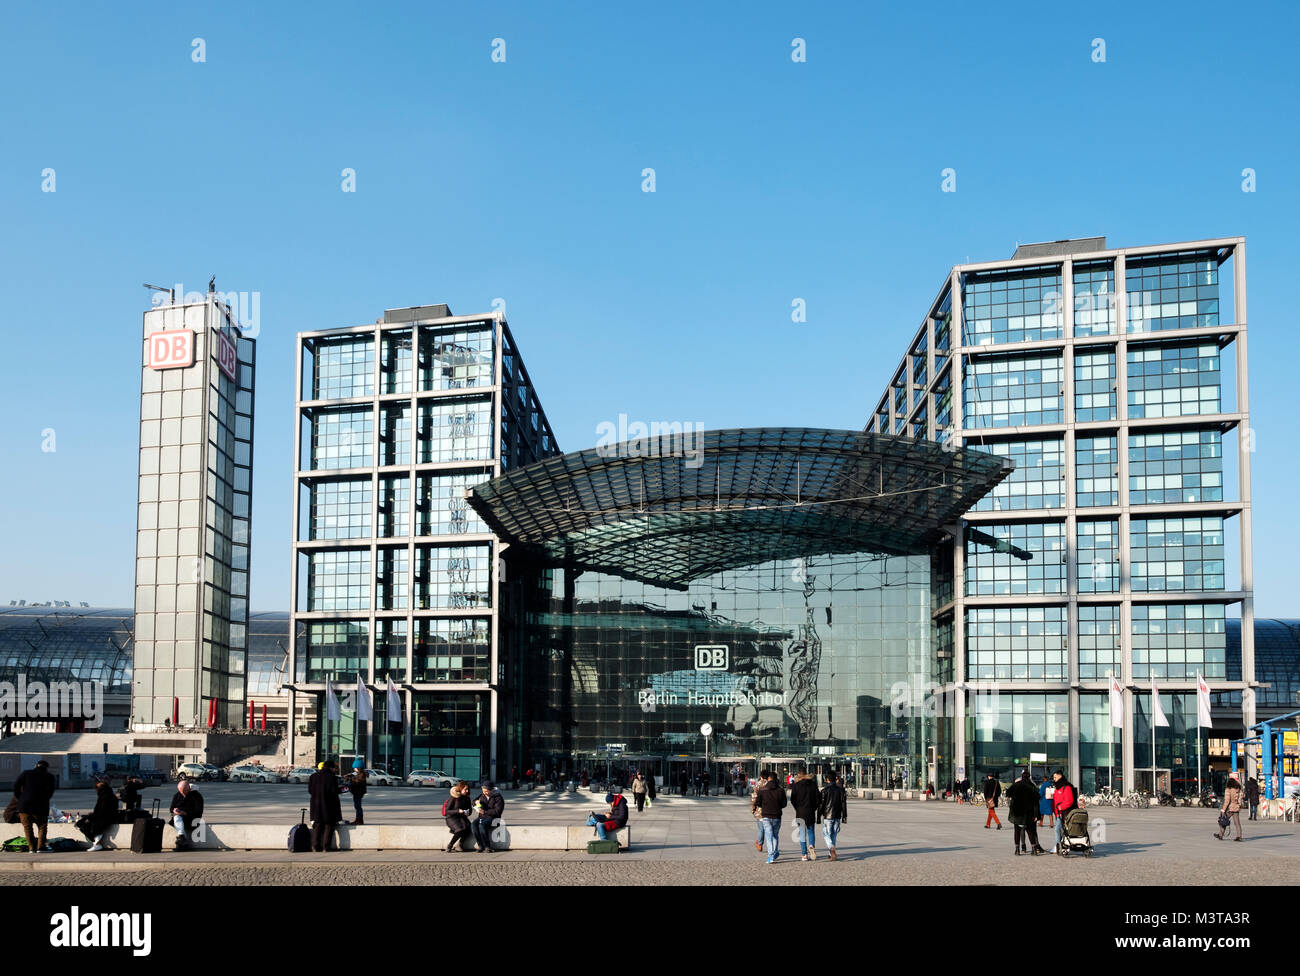 Vista di Hauptbahnhof stazione ferroviaria di Berlino, Germania Foto Stock